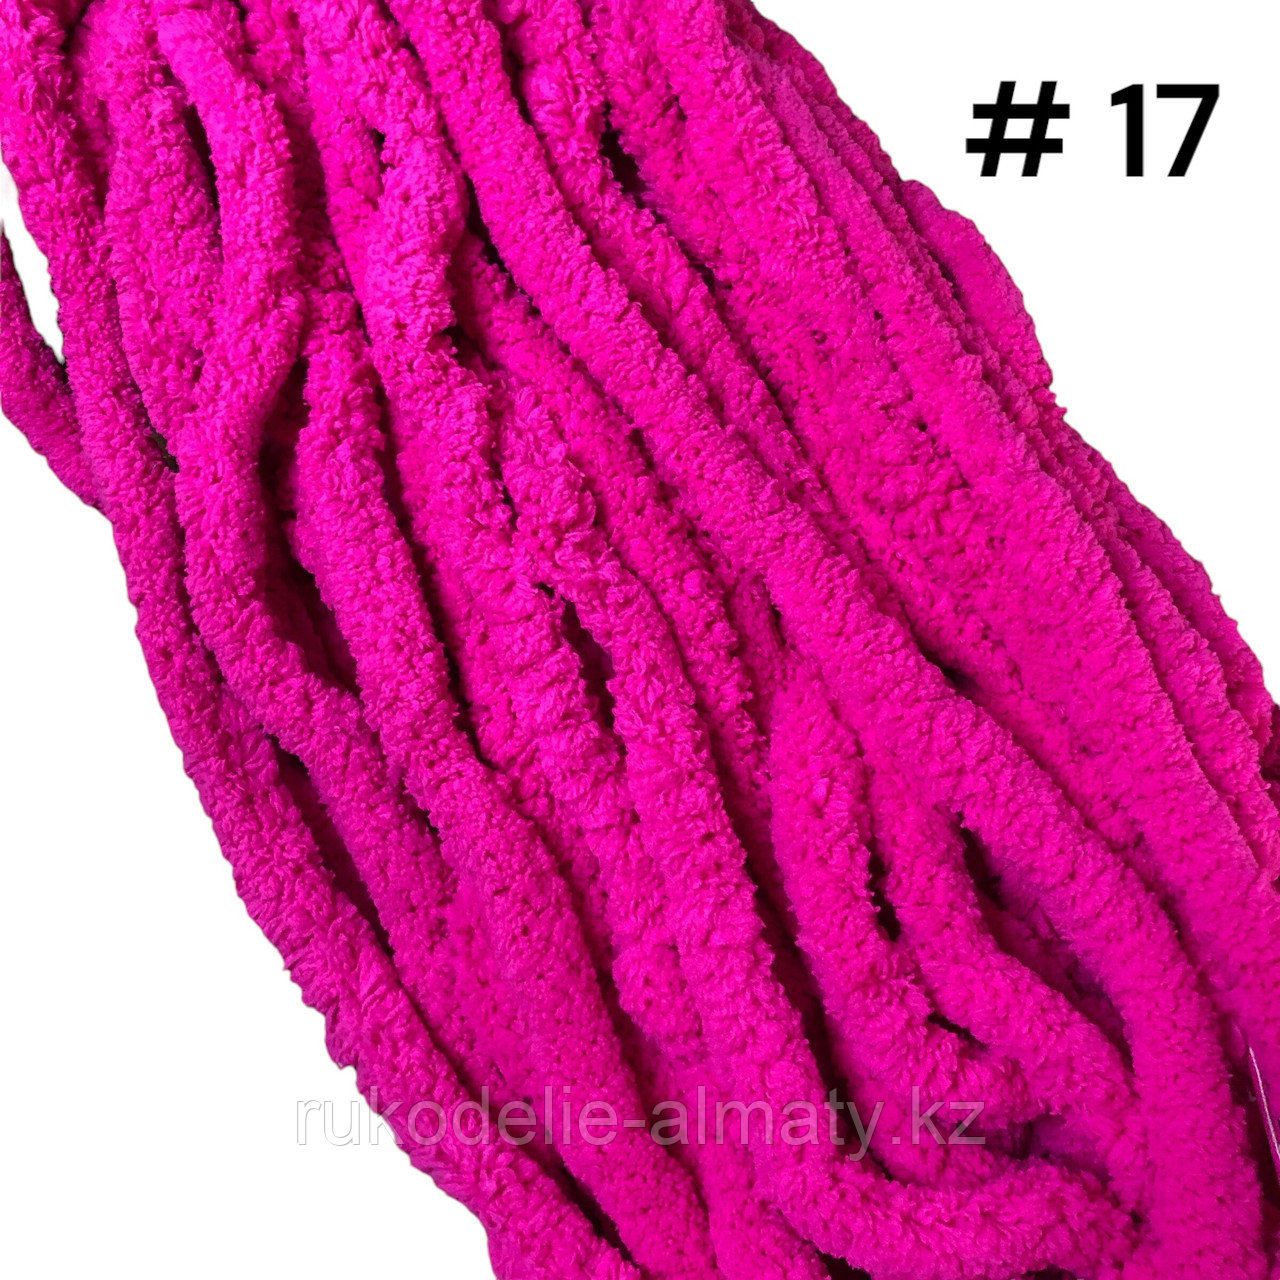 Пряжа для ручного вязания ярко-розовый